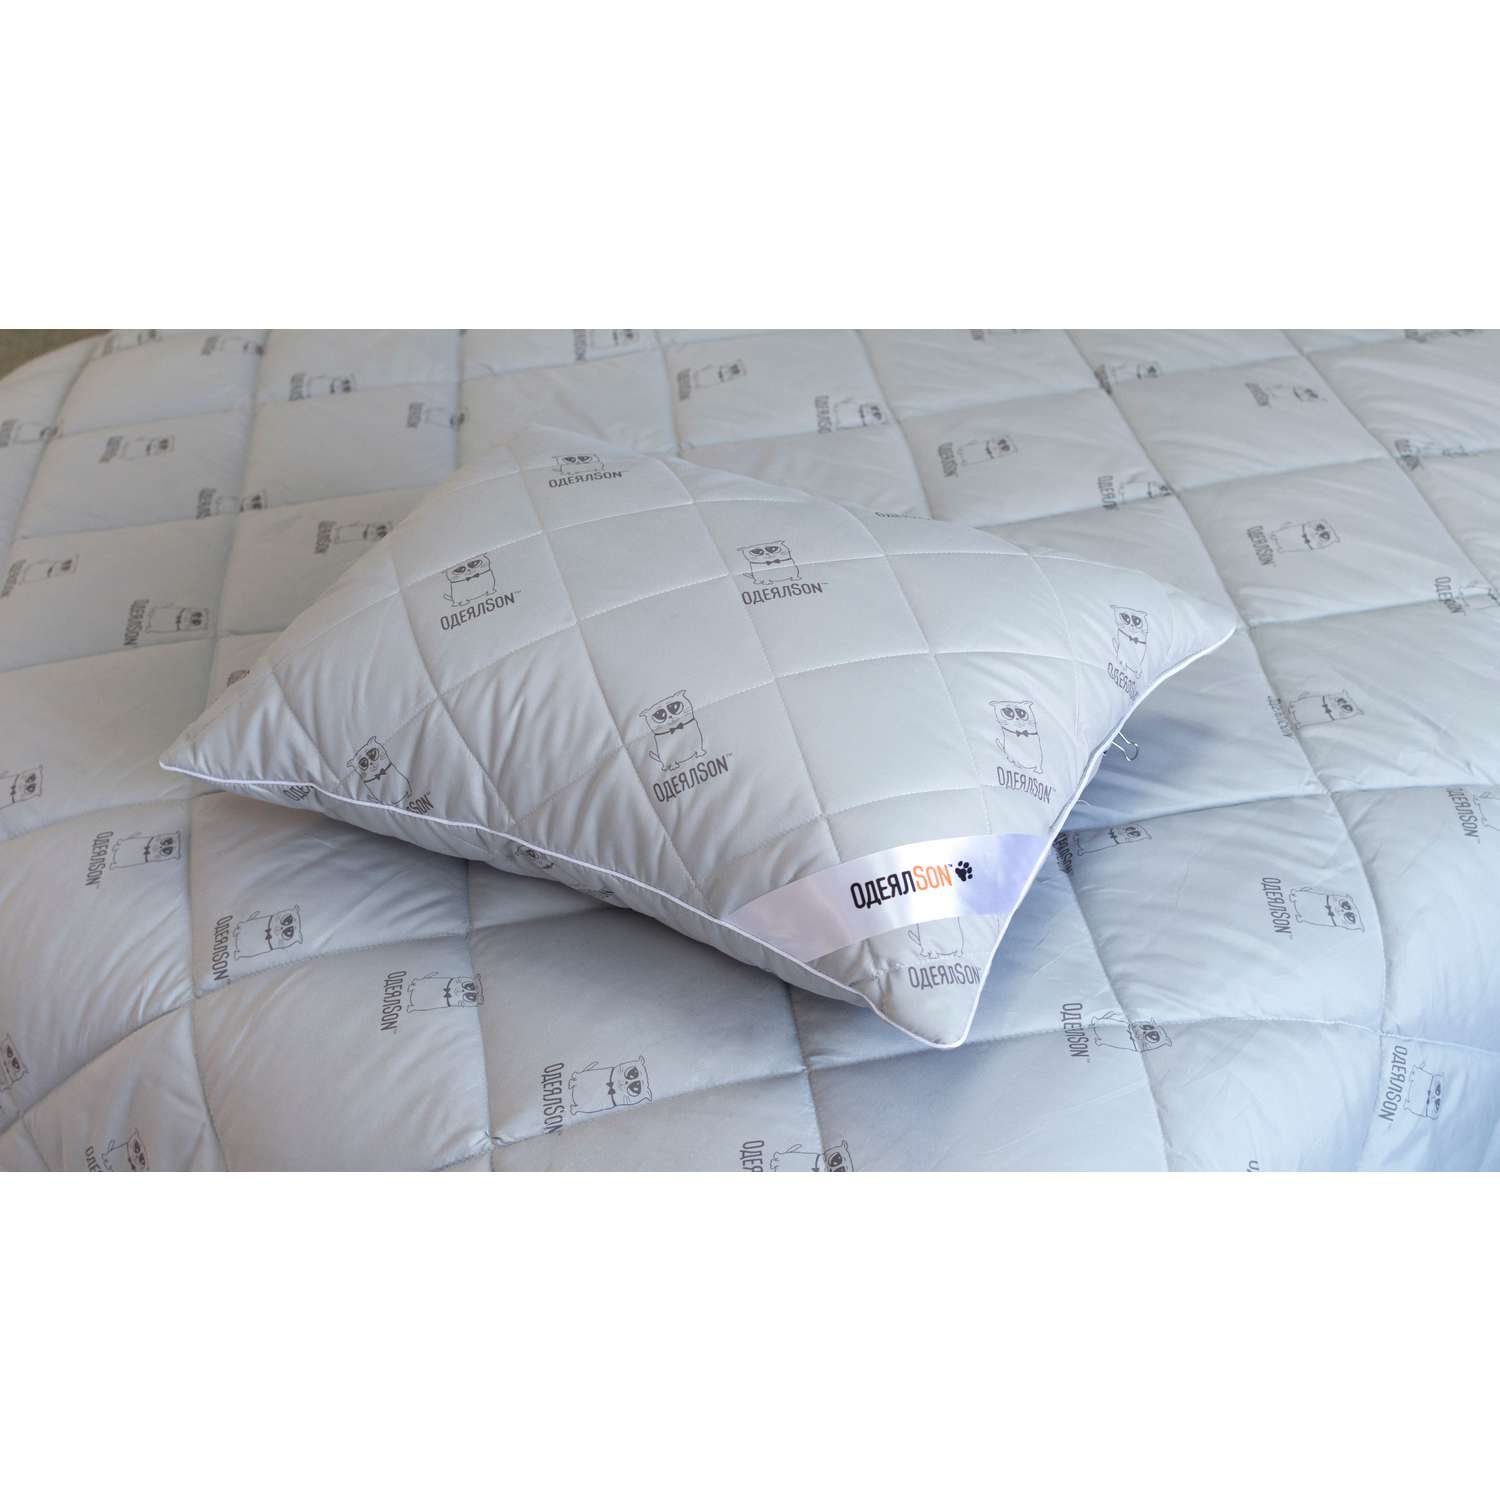 Подушка Мягкий сон одеялсон 50x70 см - фото 2